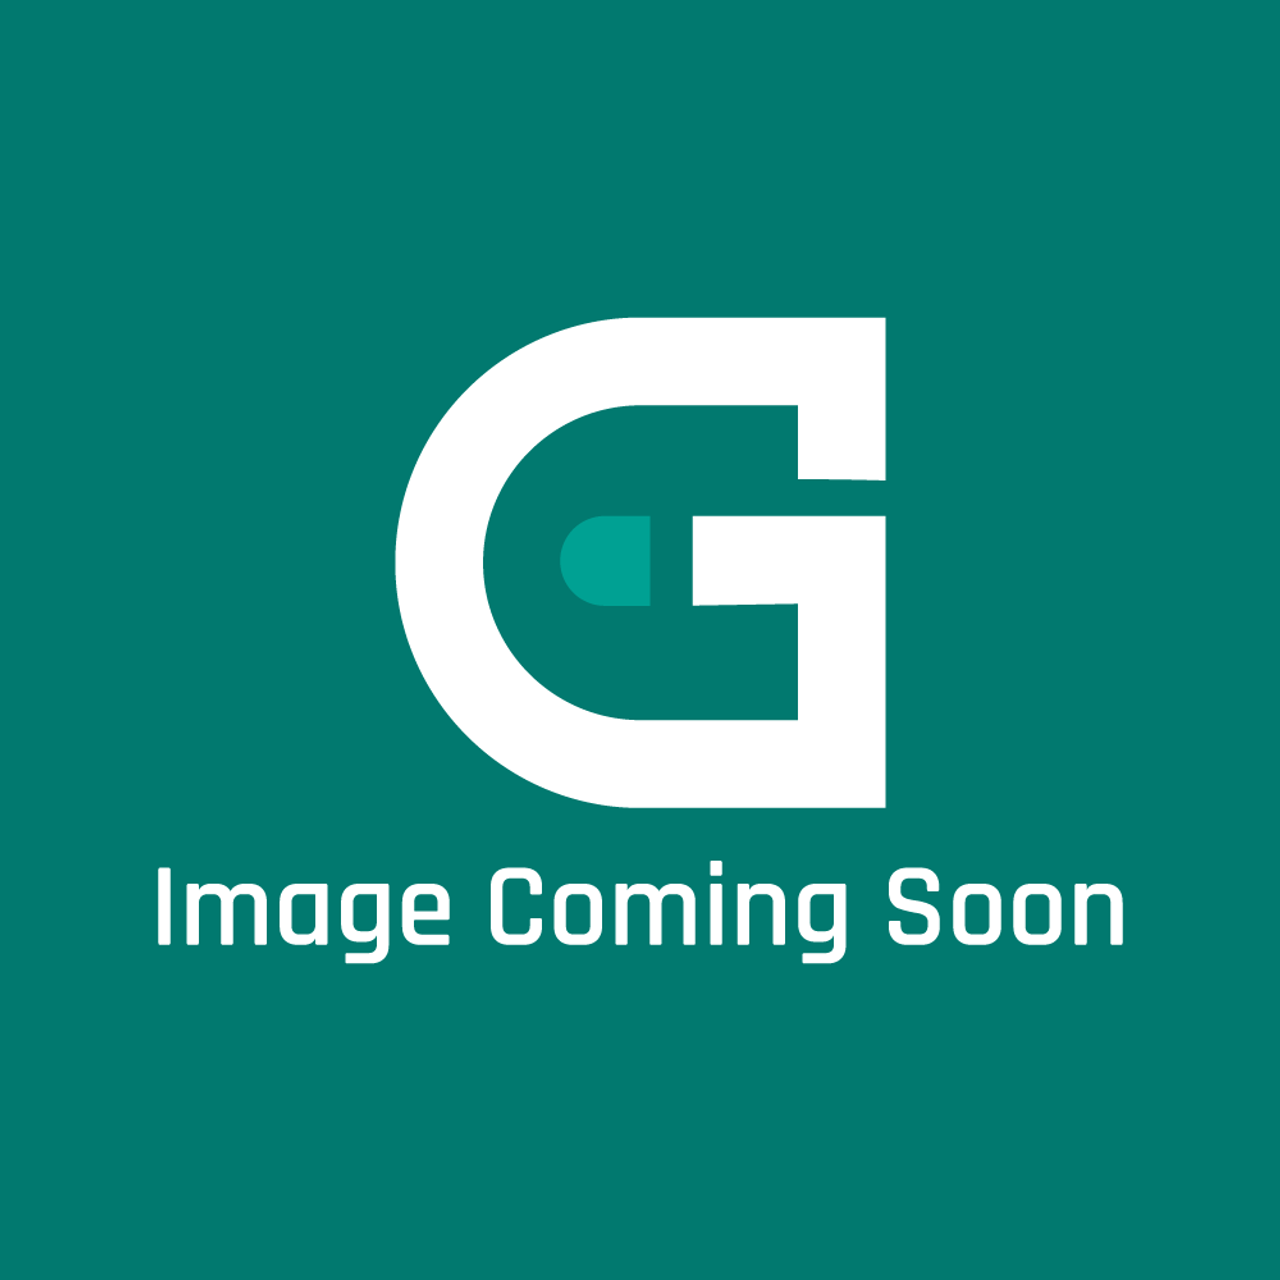 AGA Marvel AO4M31370 - Grommet Black Helvin Oc Hv4029 - Image Coming Soon!